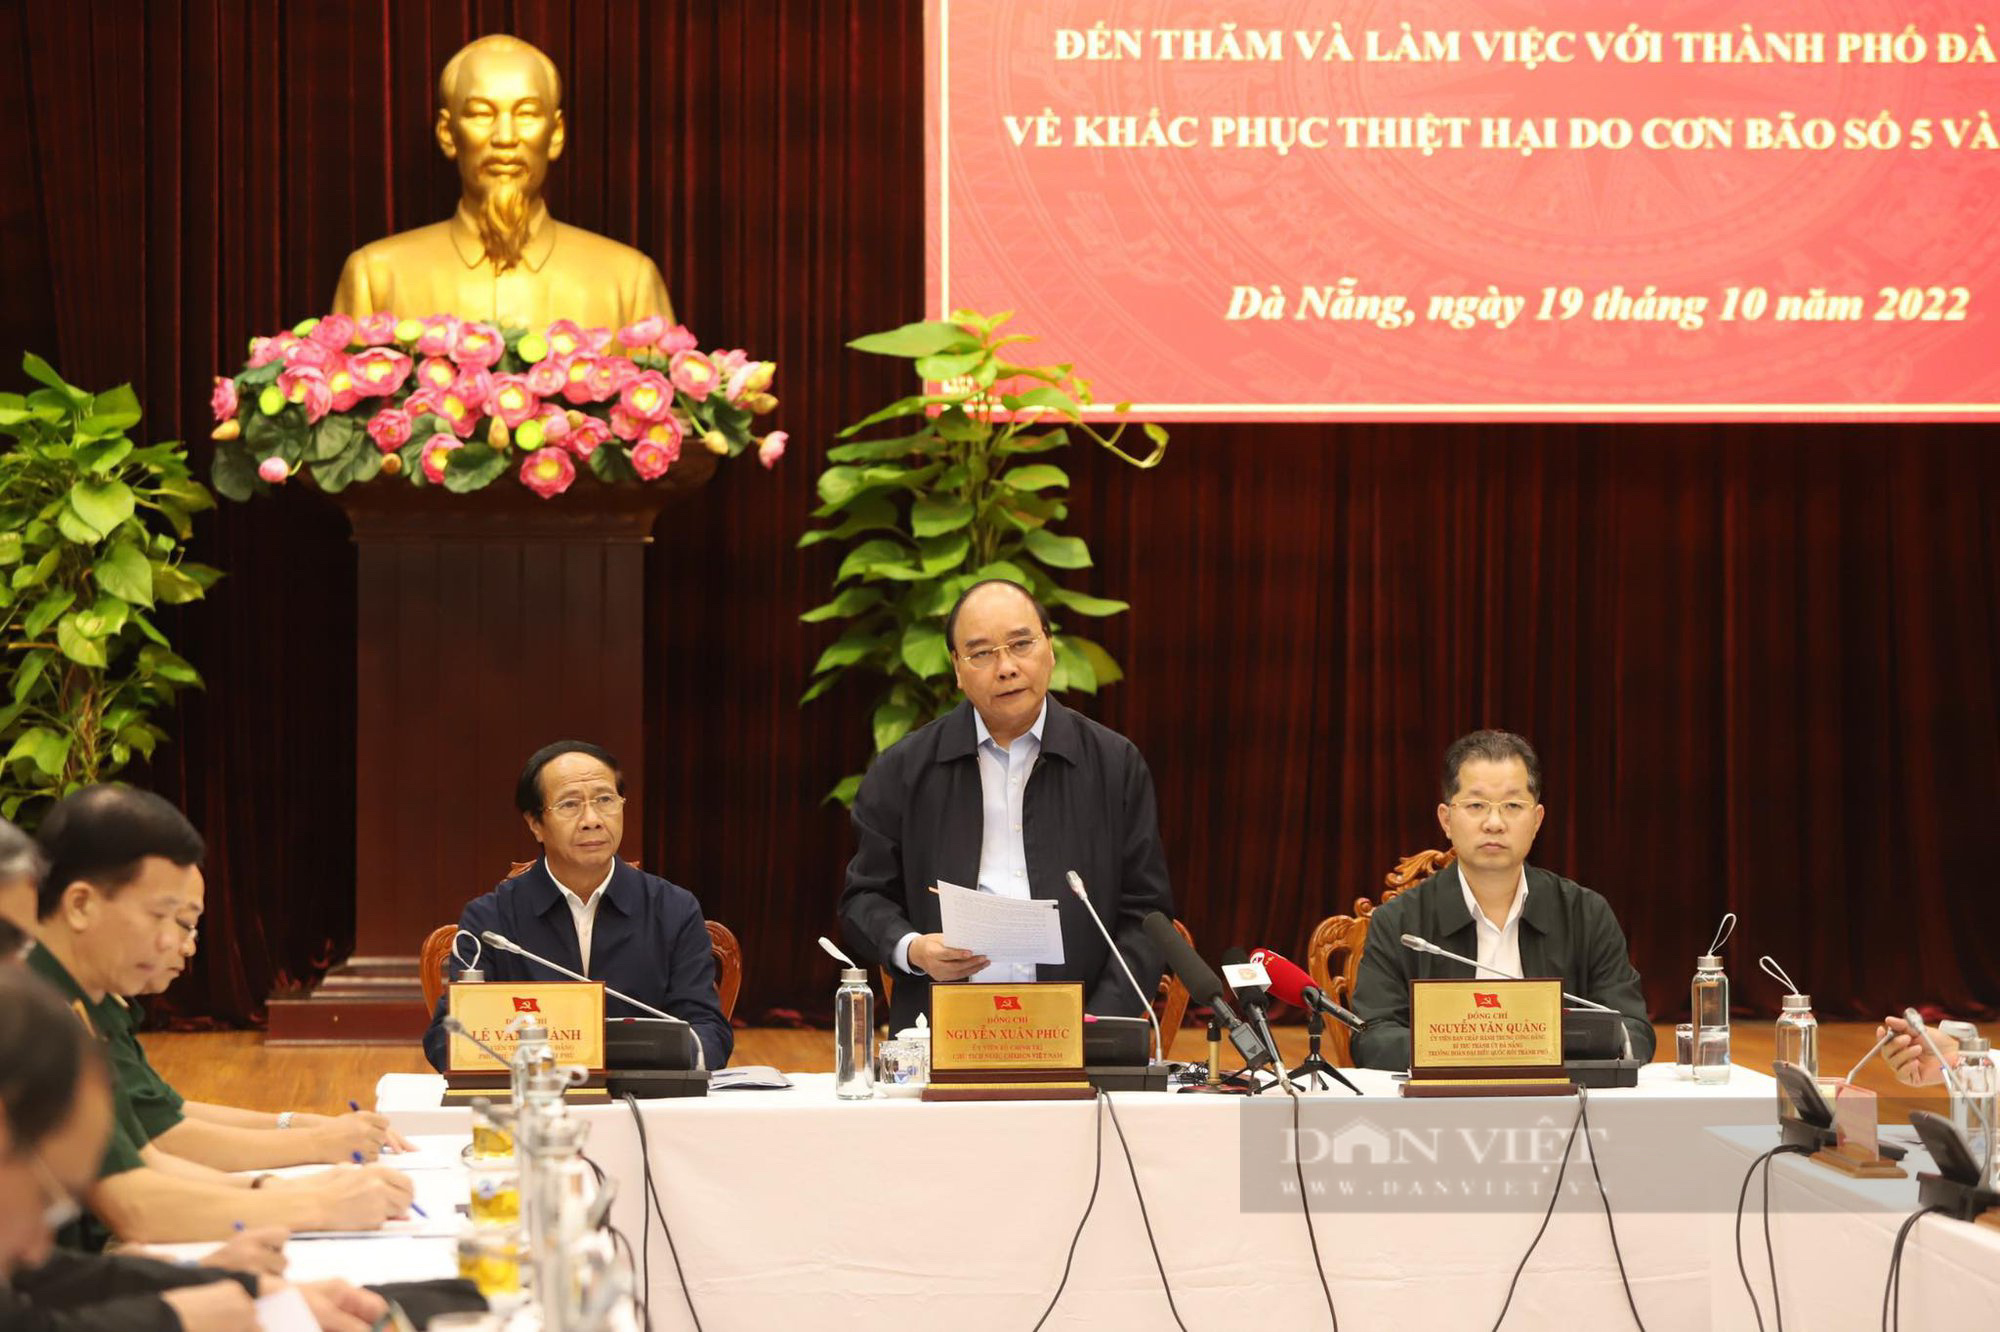 Chủ tịch nước chuyển lời thăm hỏi ân cần của Tổng Bí thư đến người dân Đà Nẵng và miền Trung  - Ảnh 1.